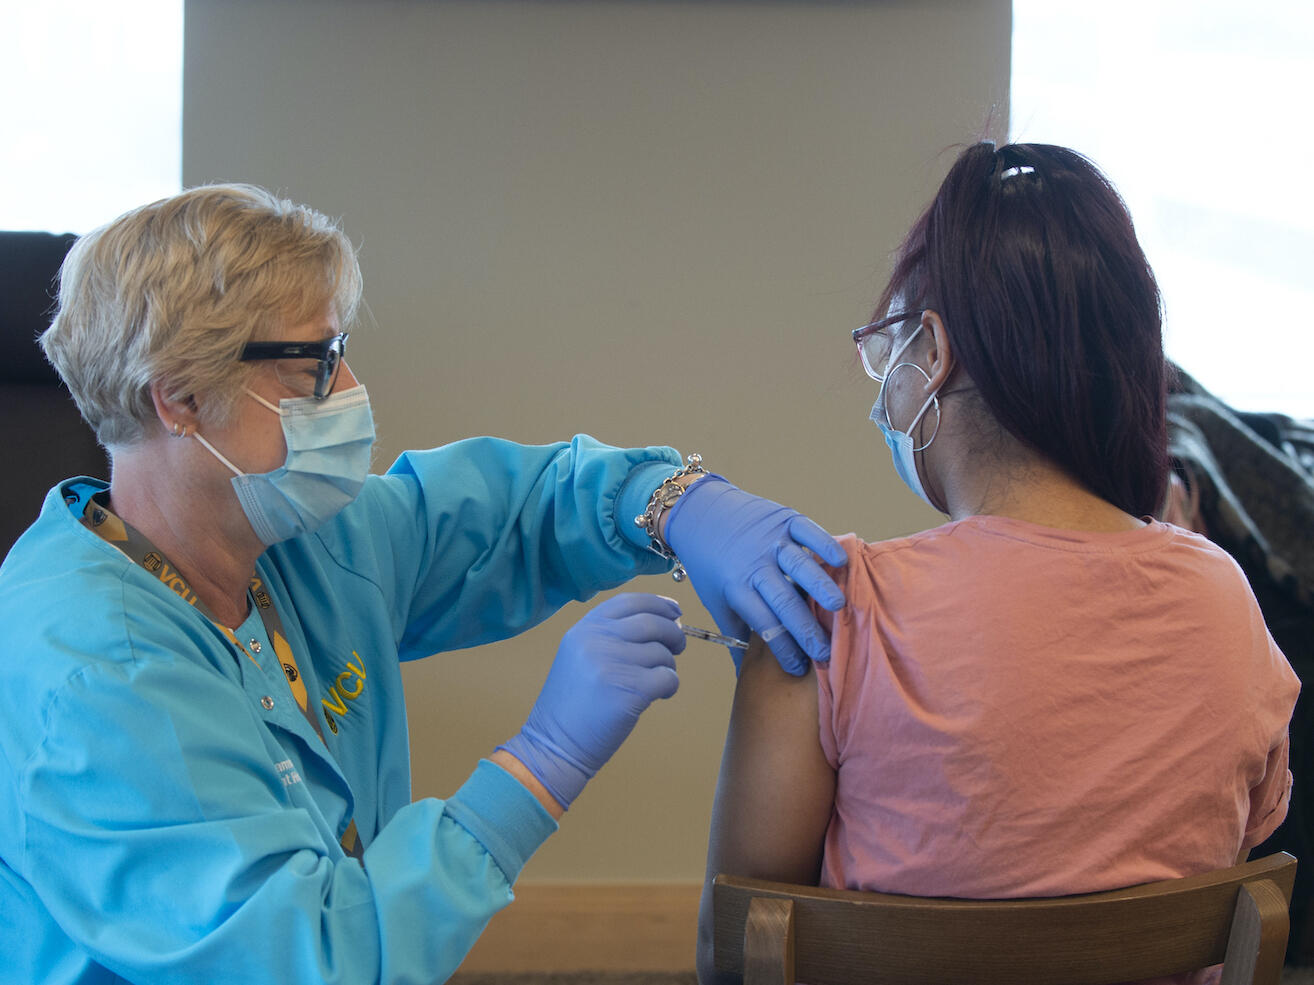 A VCU student receives a COVID-19 vaccine